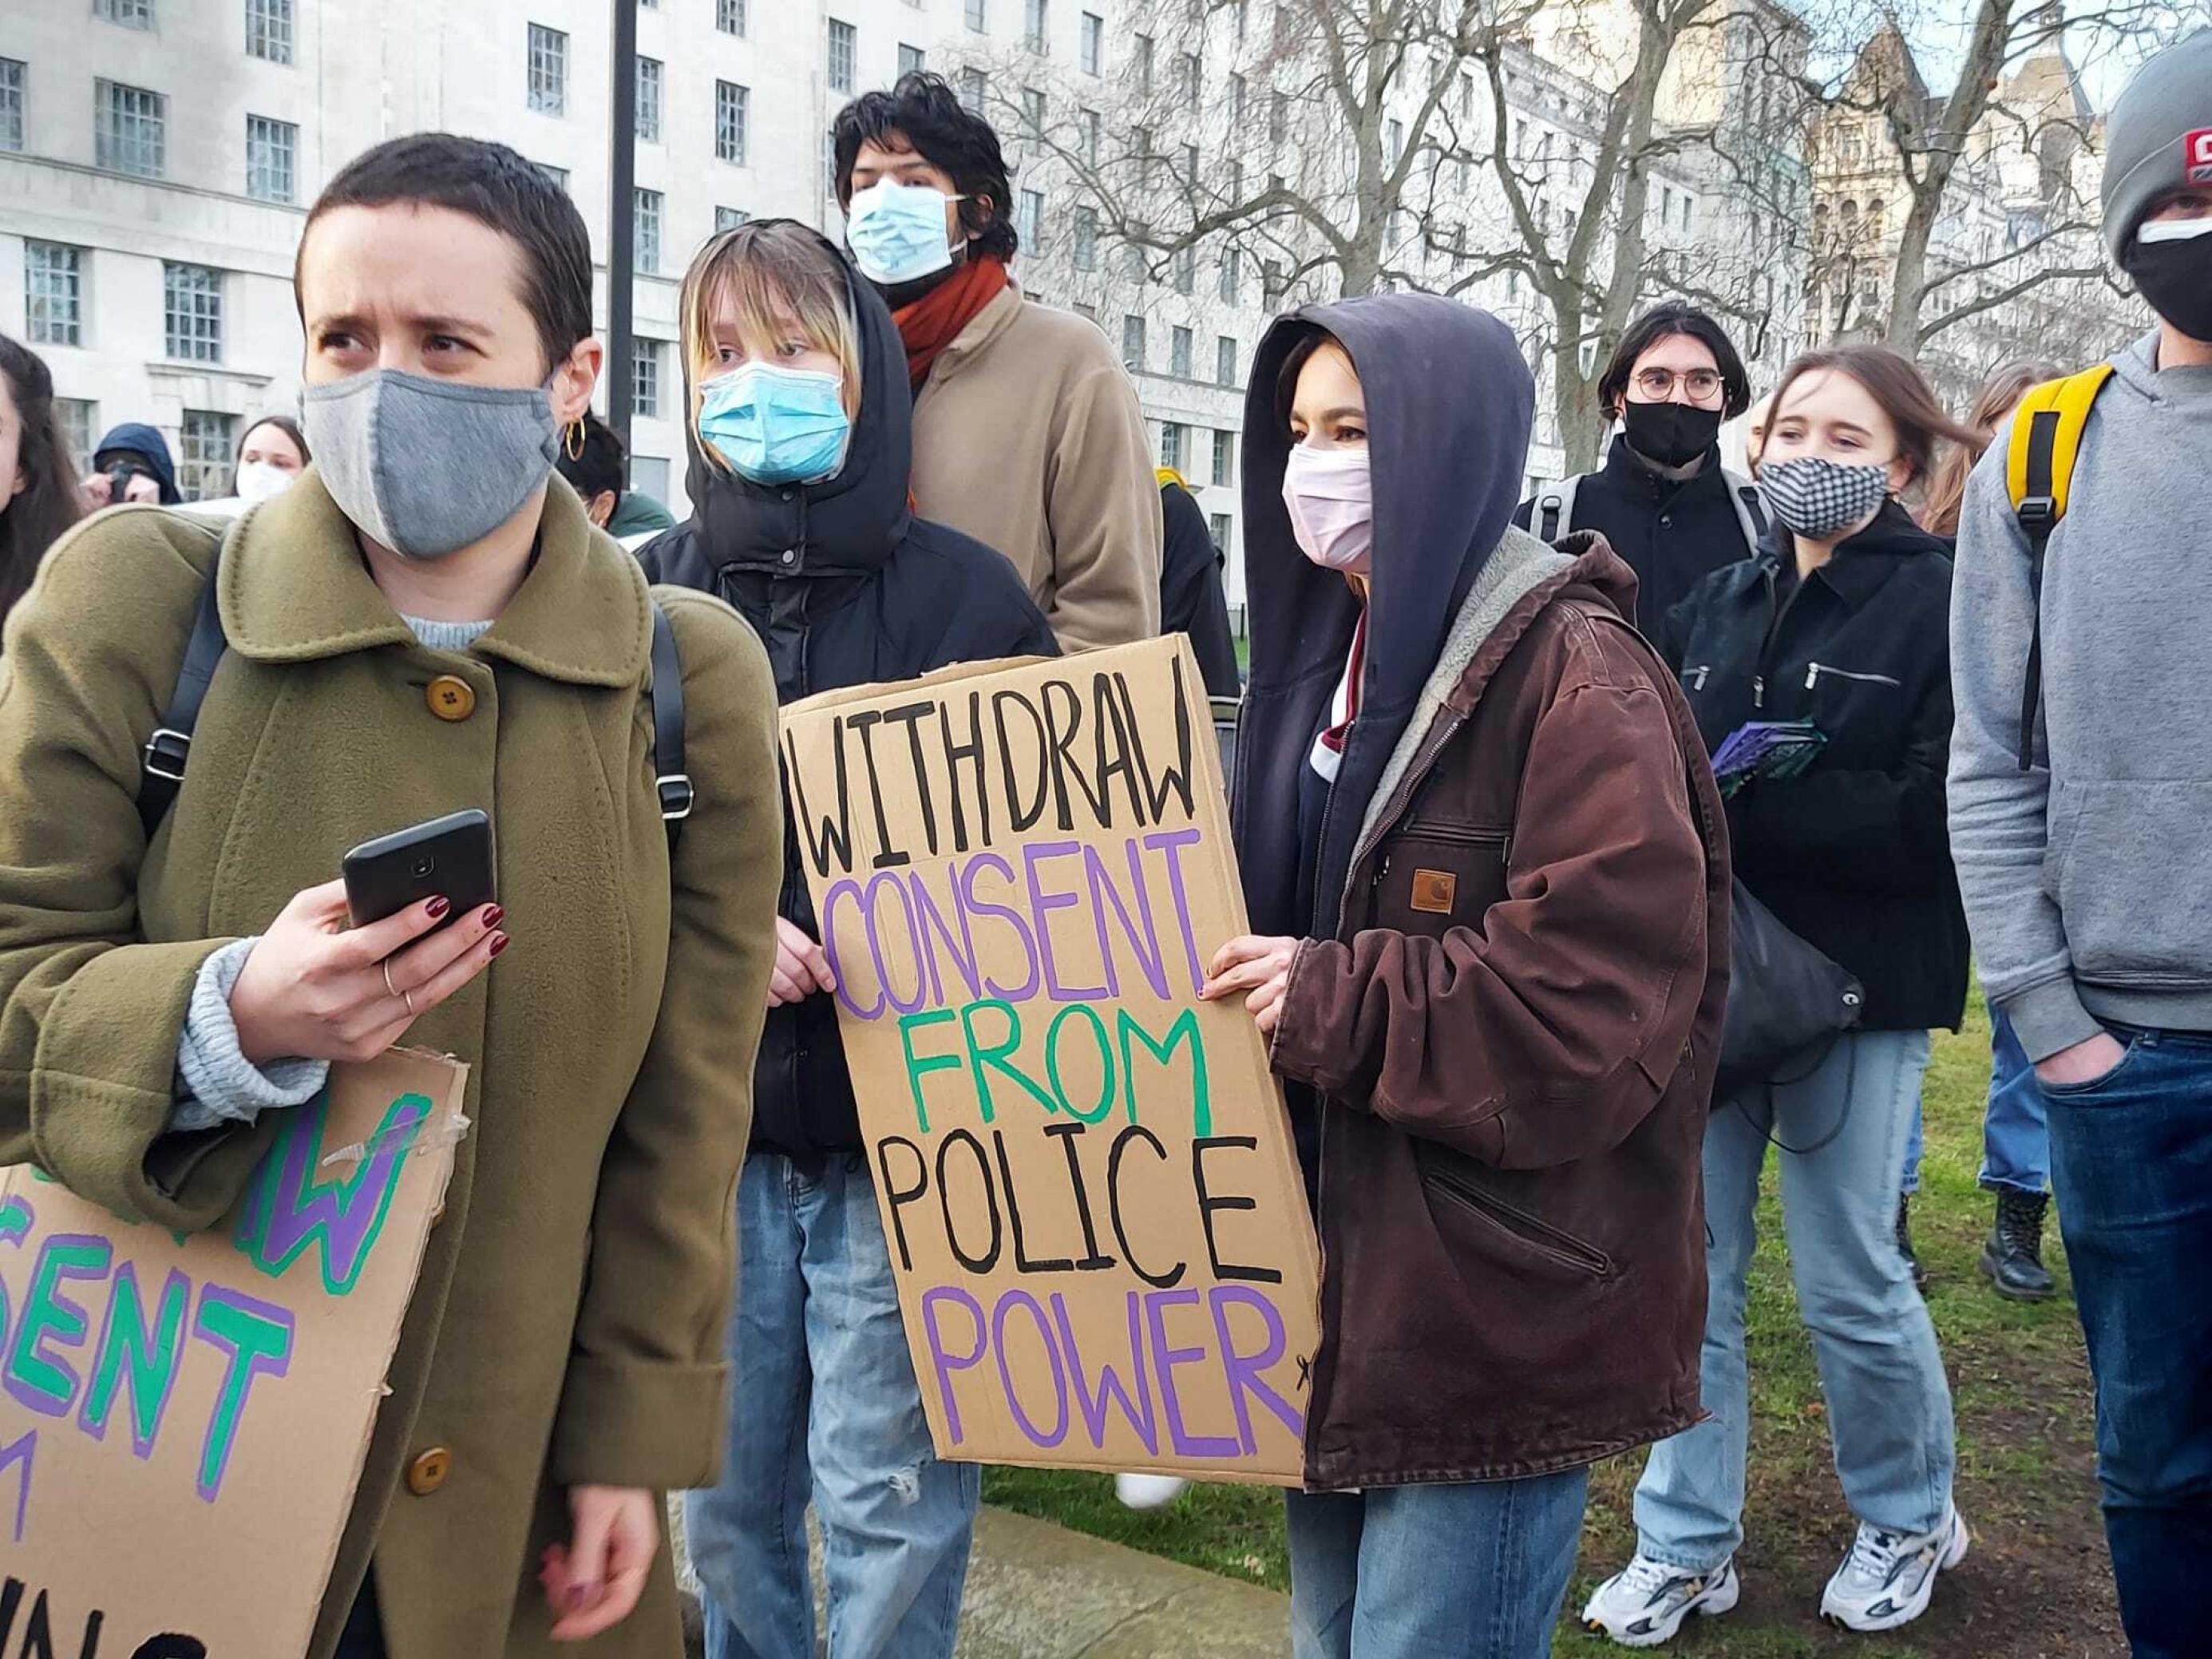 Protestierende hält ein Schild hoch, auf dem steht: Withdraw Consent from Police power.